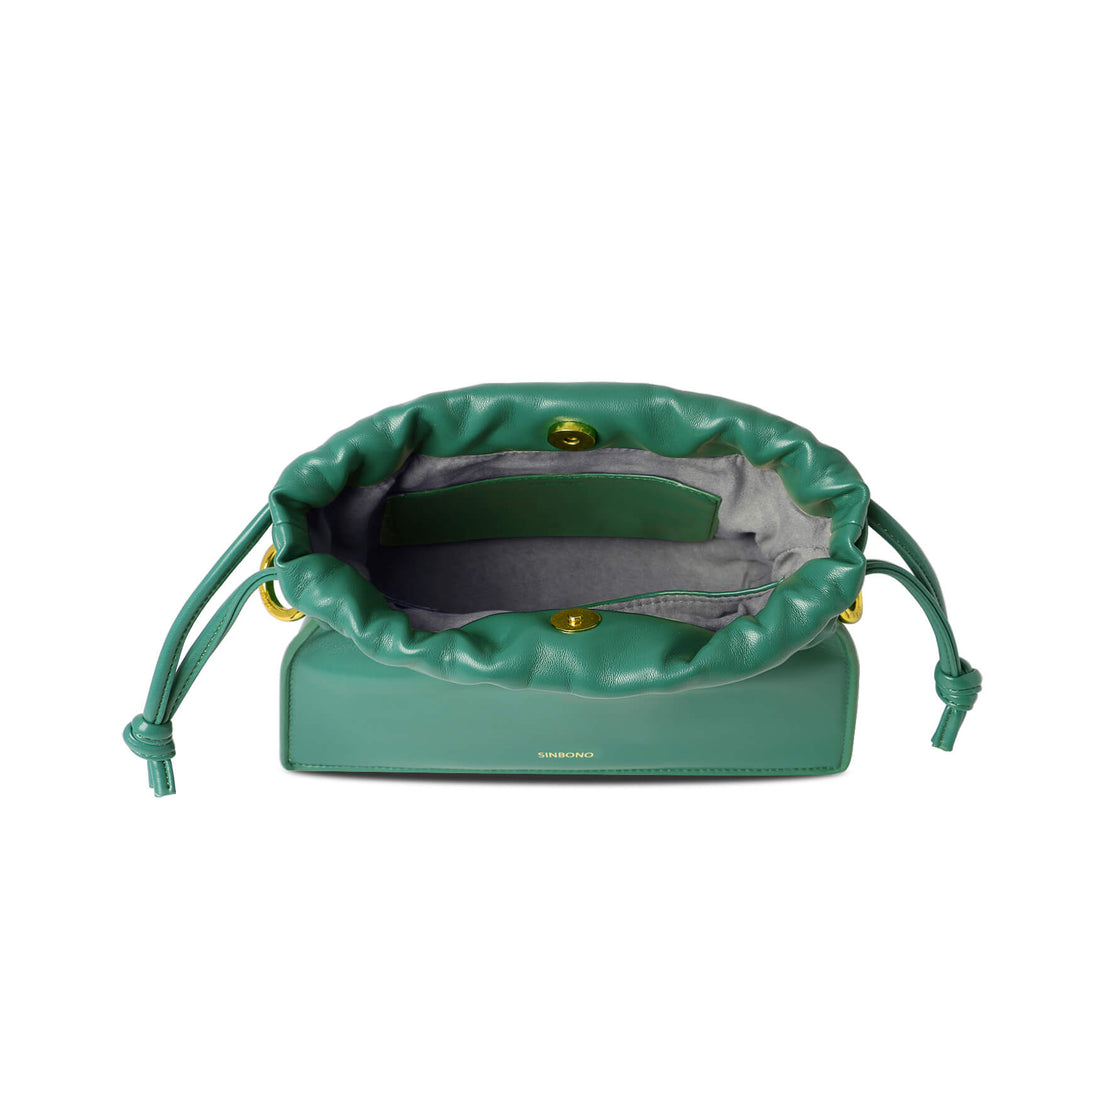 SINBONO Drawstring Handbag Green